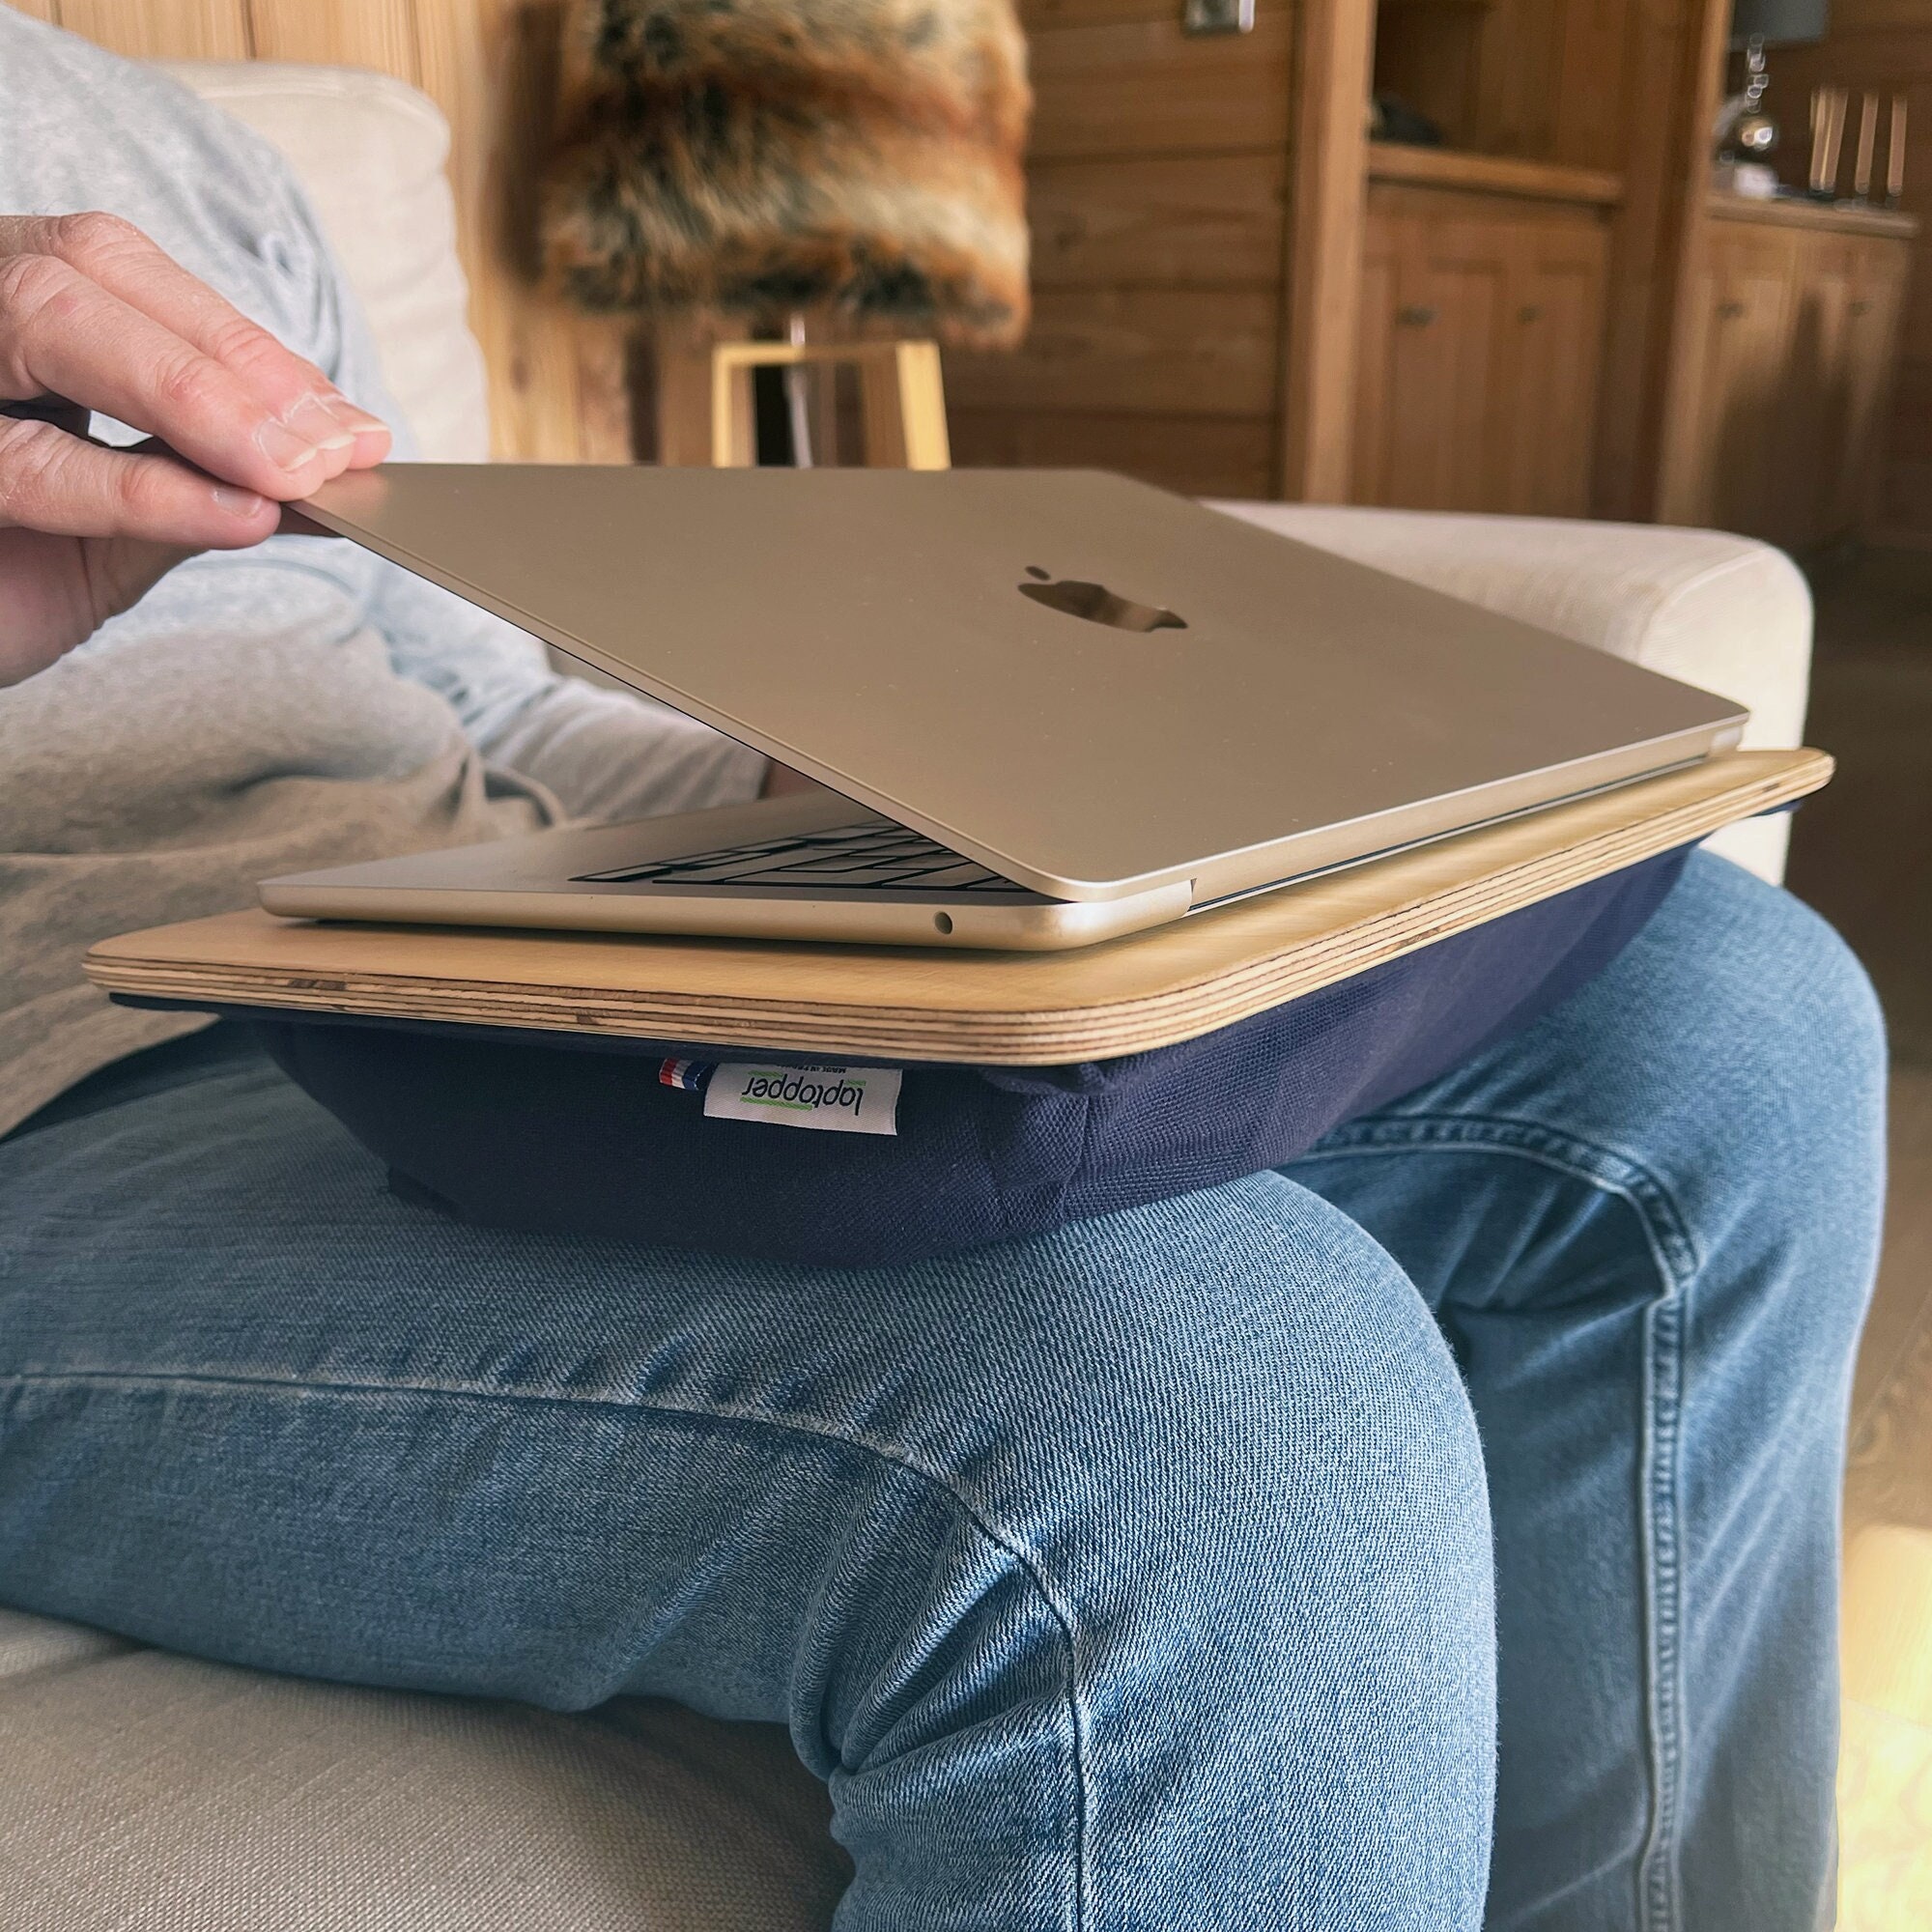 Laptopper : le support de tablette trendy